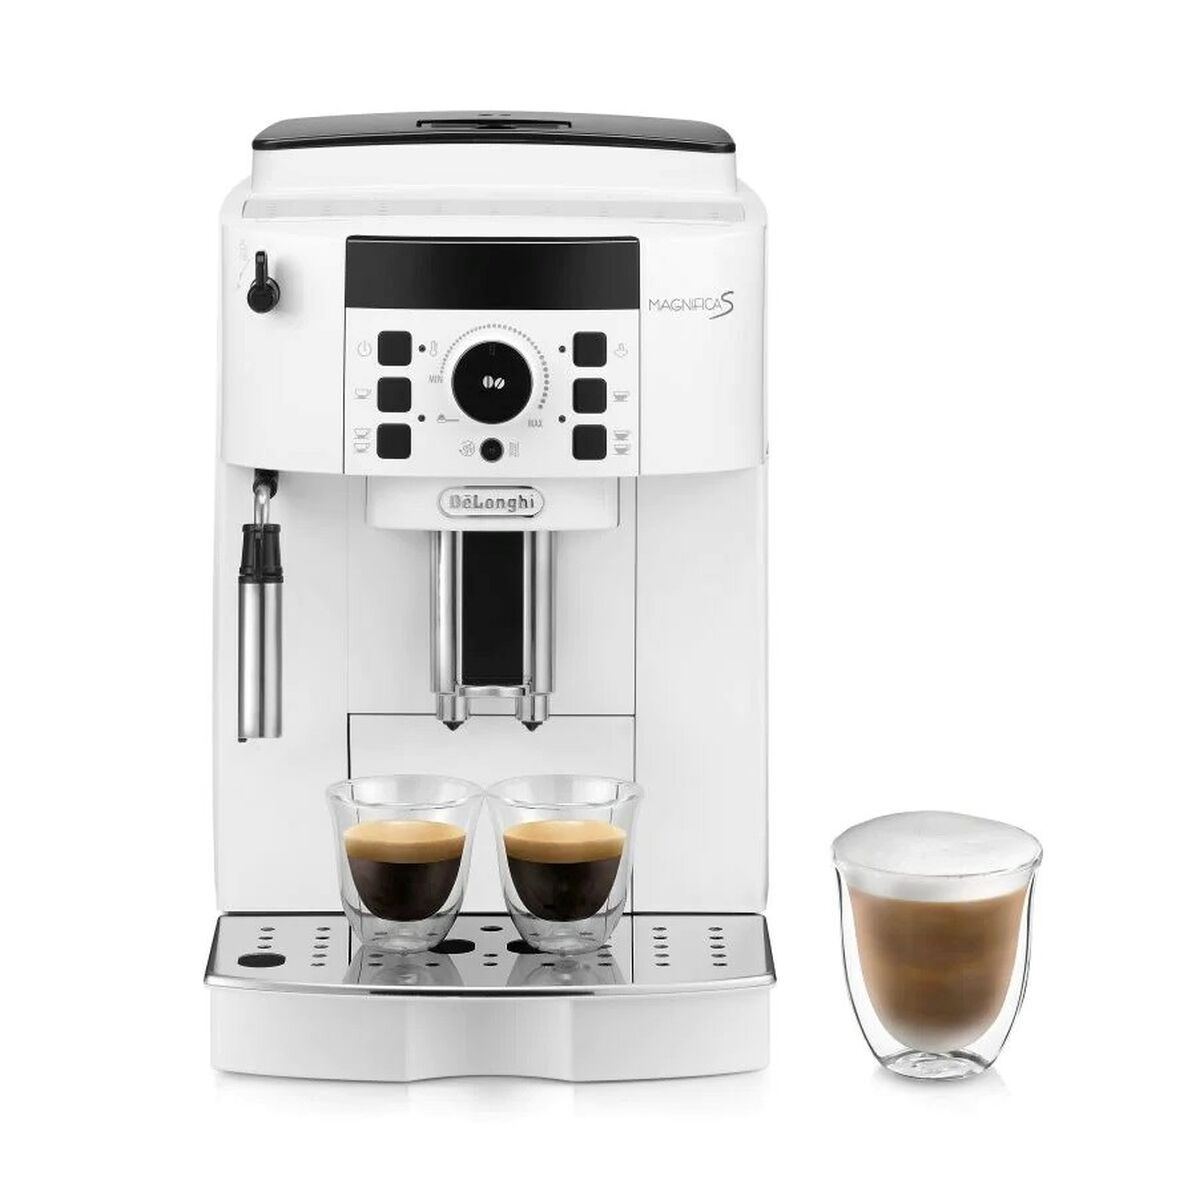 Superautomatische Kaffeemaschine DeLonghi ECAM 21.117 W Weiß 1450 W 15 bar 2 Kopper 1,8 L